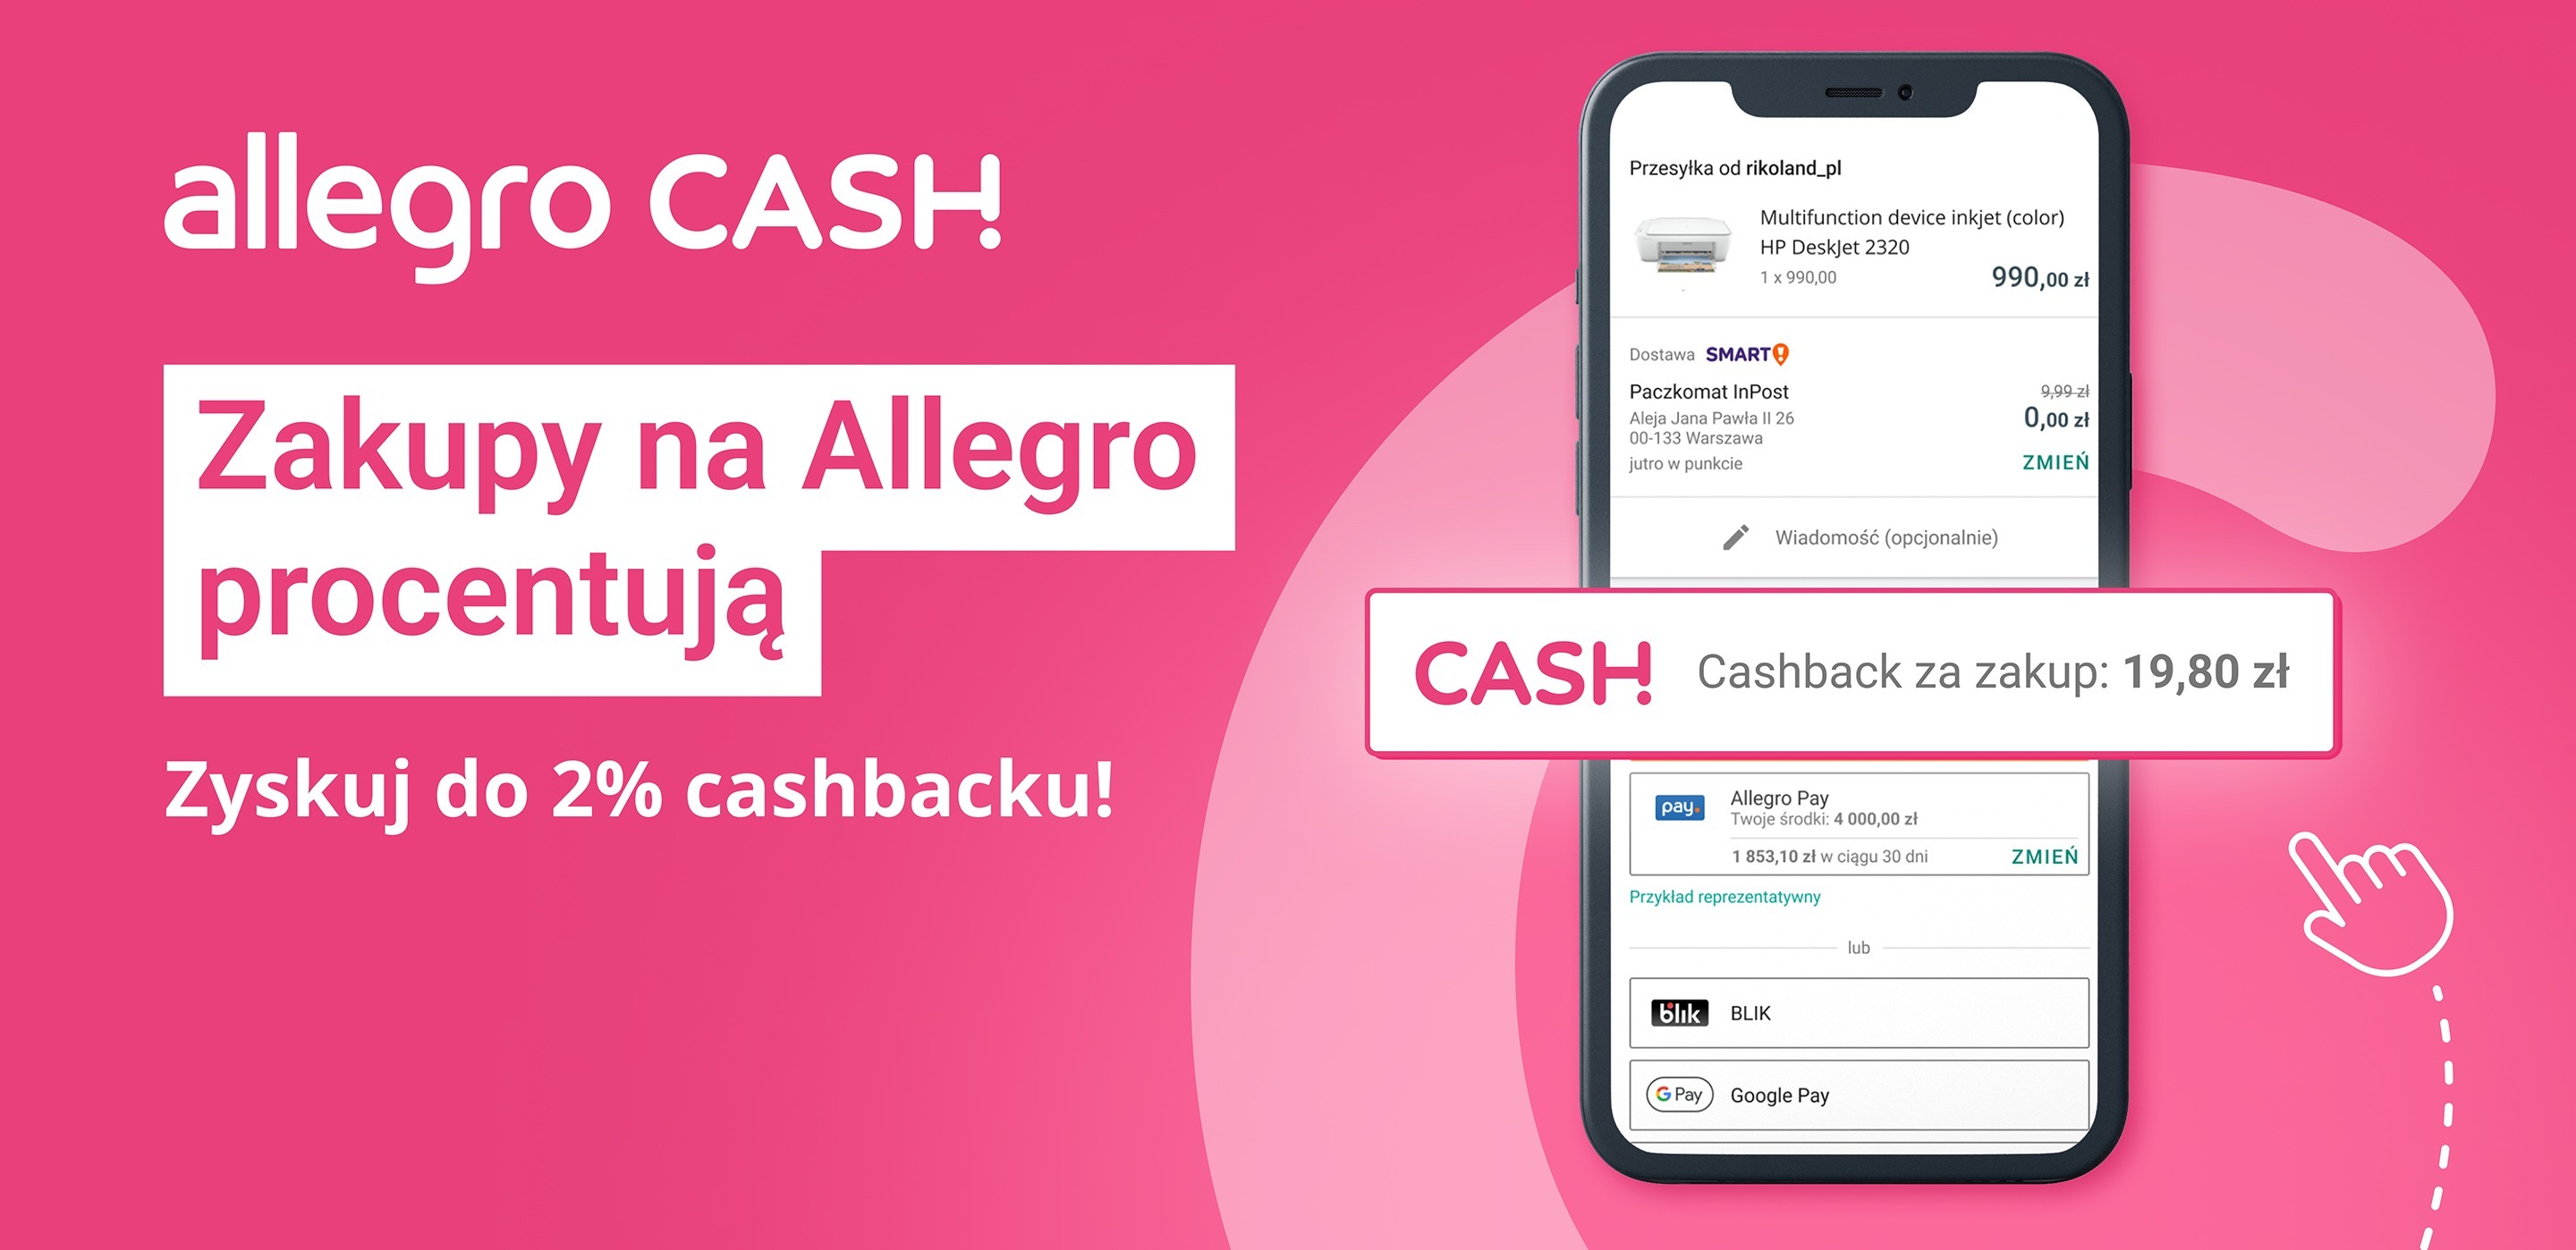 Allegro Cash: nowa metoda płatności na Allegro